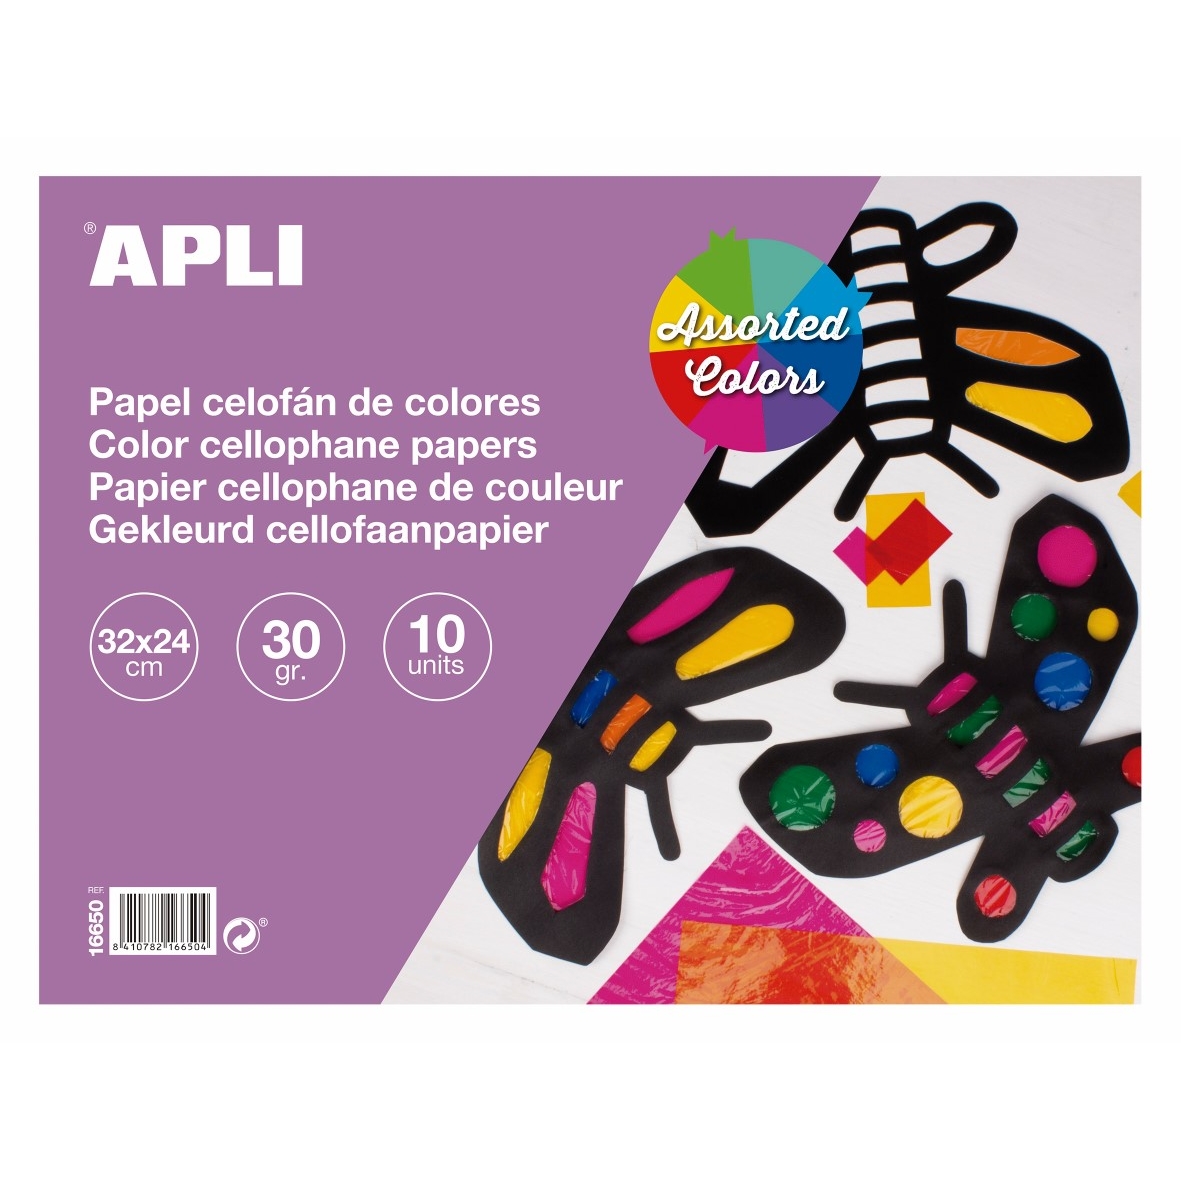 Průhledná fólie celofánová Apli, 10 listů, mix barev